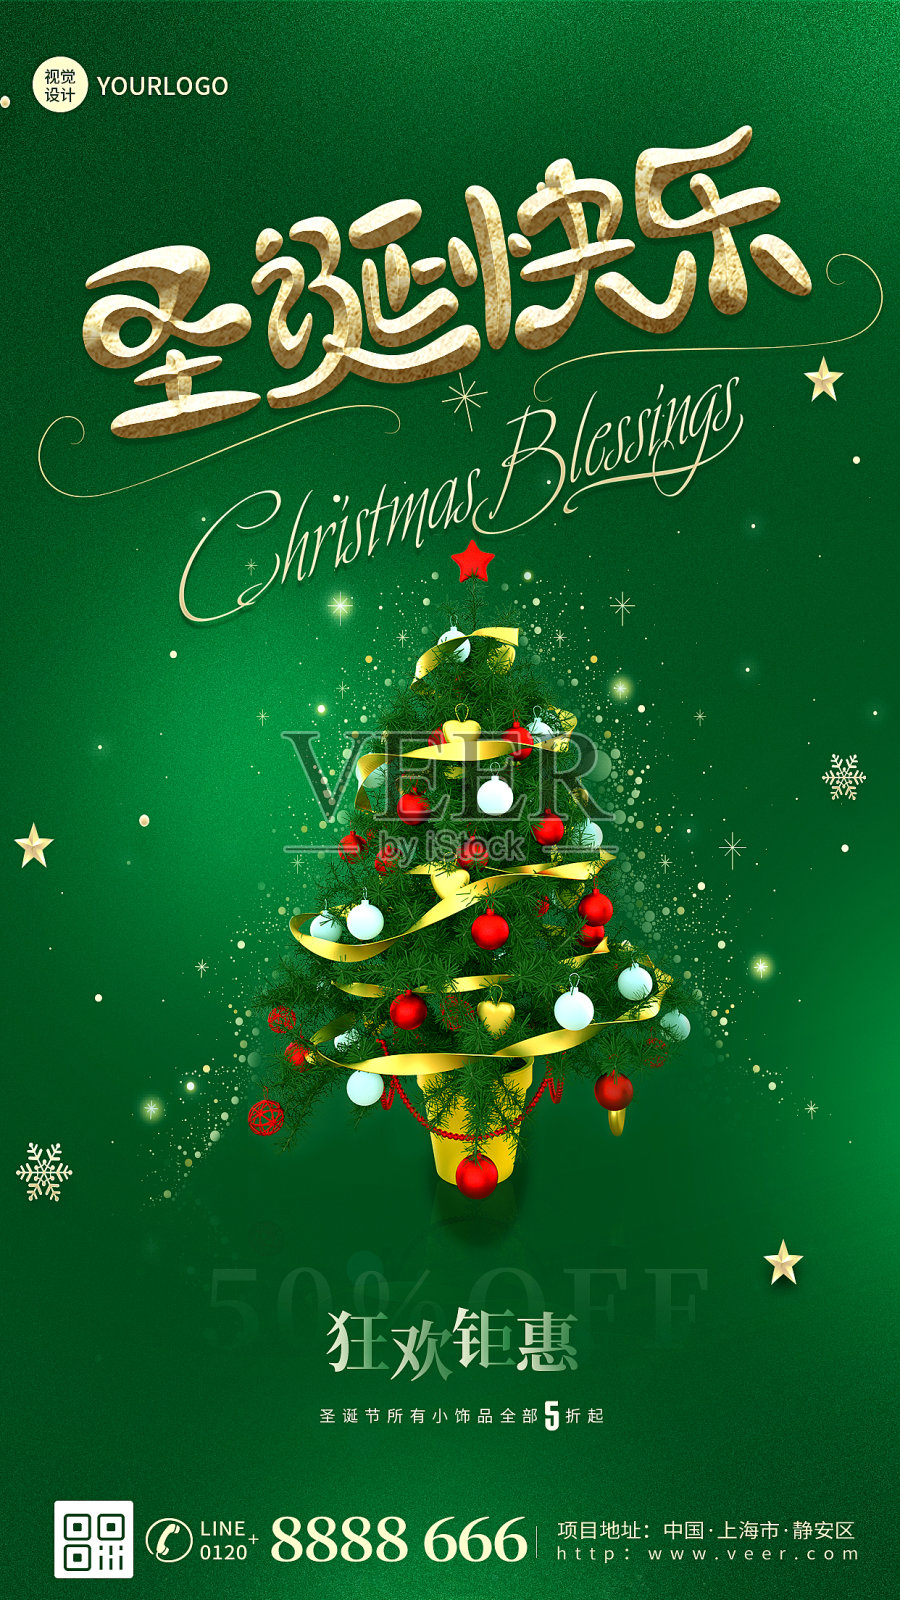 圣诞节借势促销活动简约大气手机海报设计模板素材